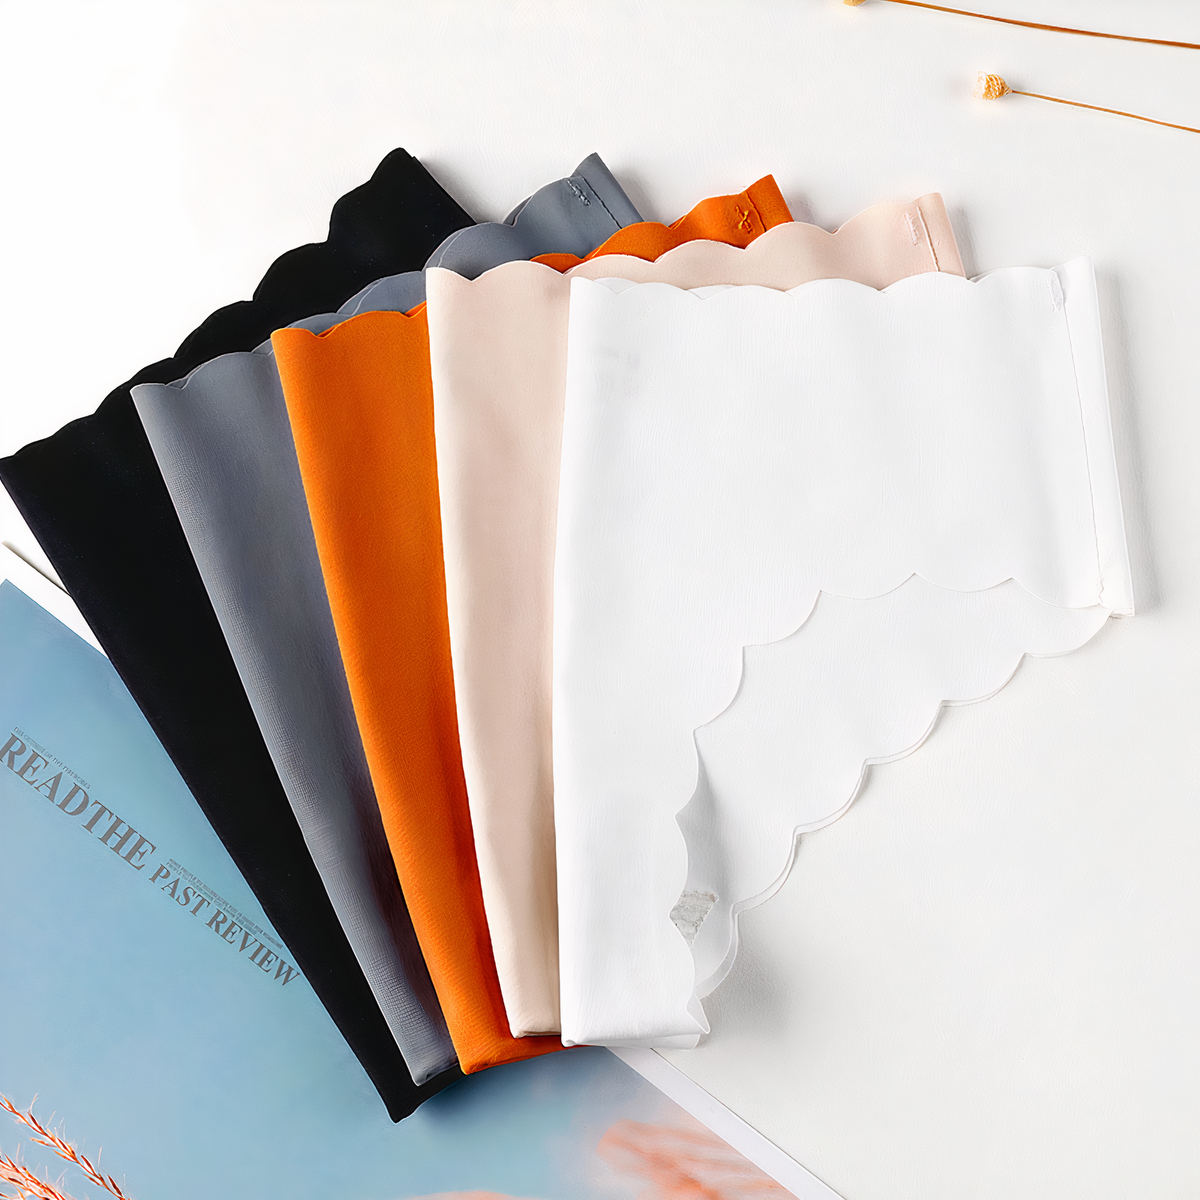 5 culottes pliées sur un fond. Une orange, une grise, une noire, une bleu et une blanche.